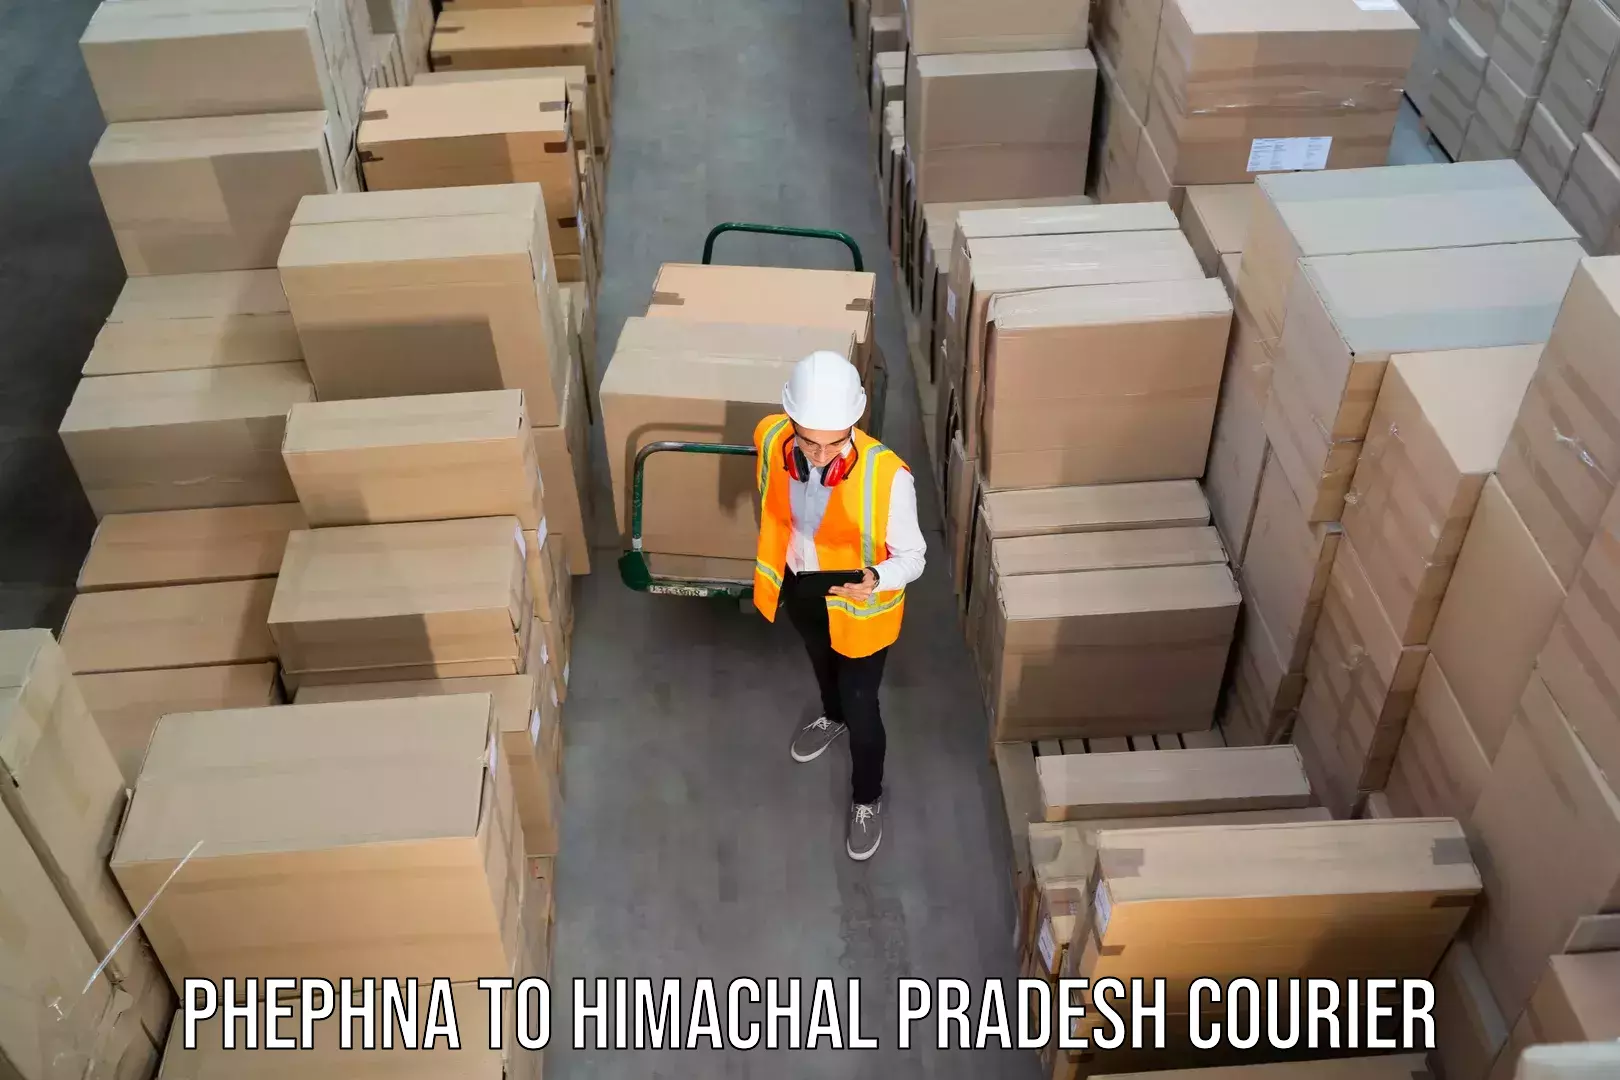 Bulk shipping discounts in Phephna to Chintpurni